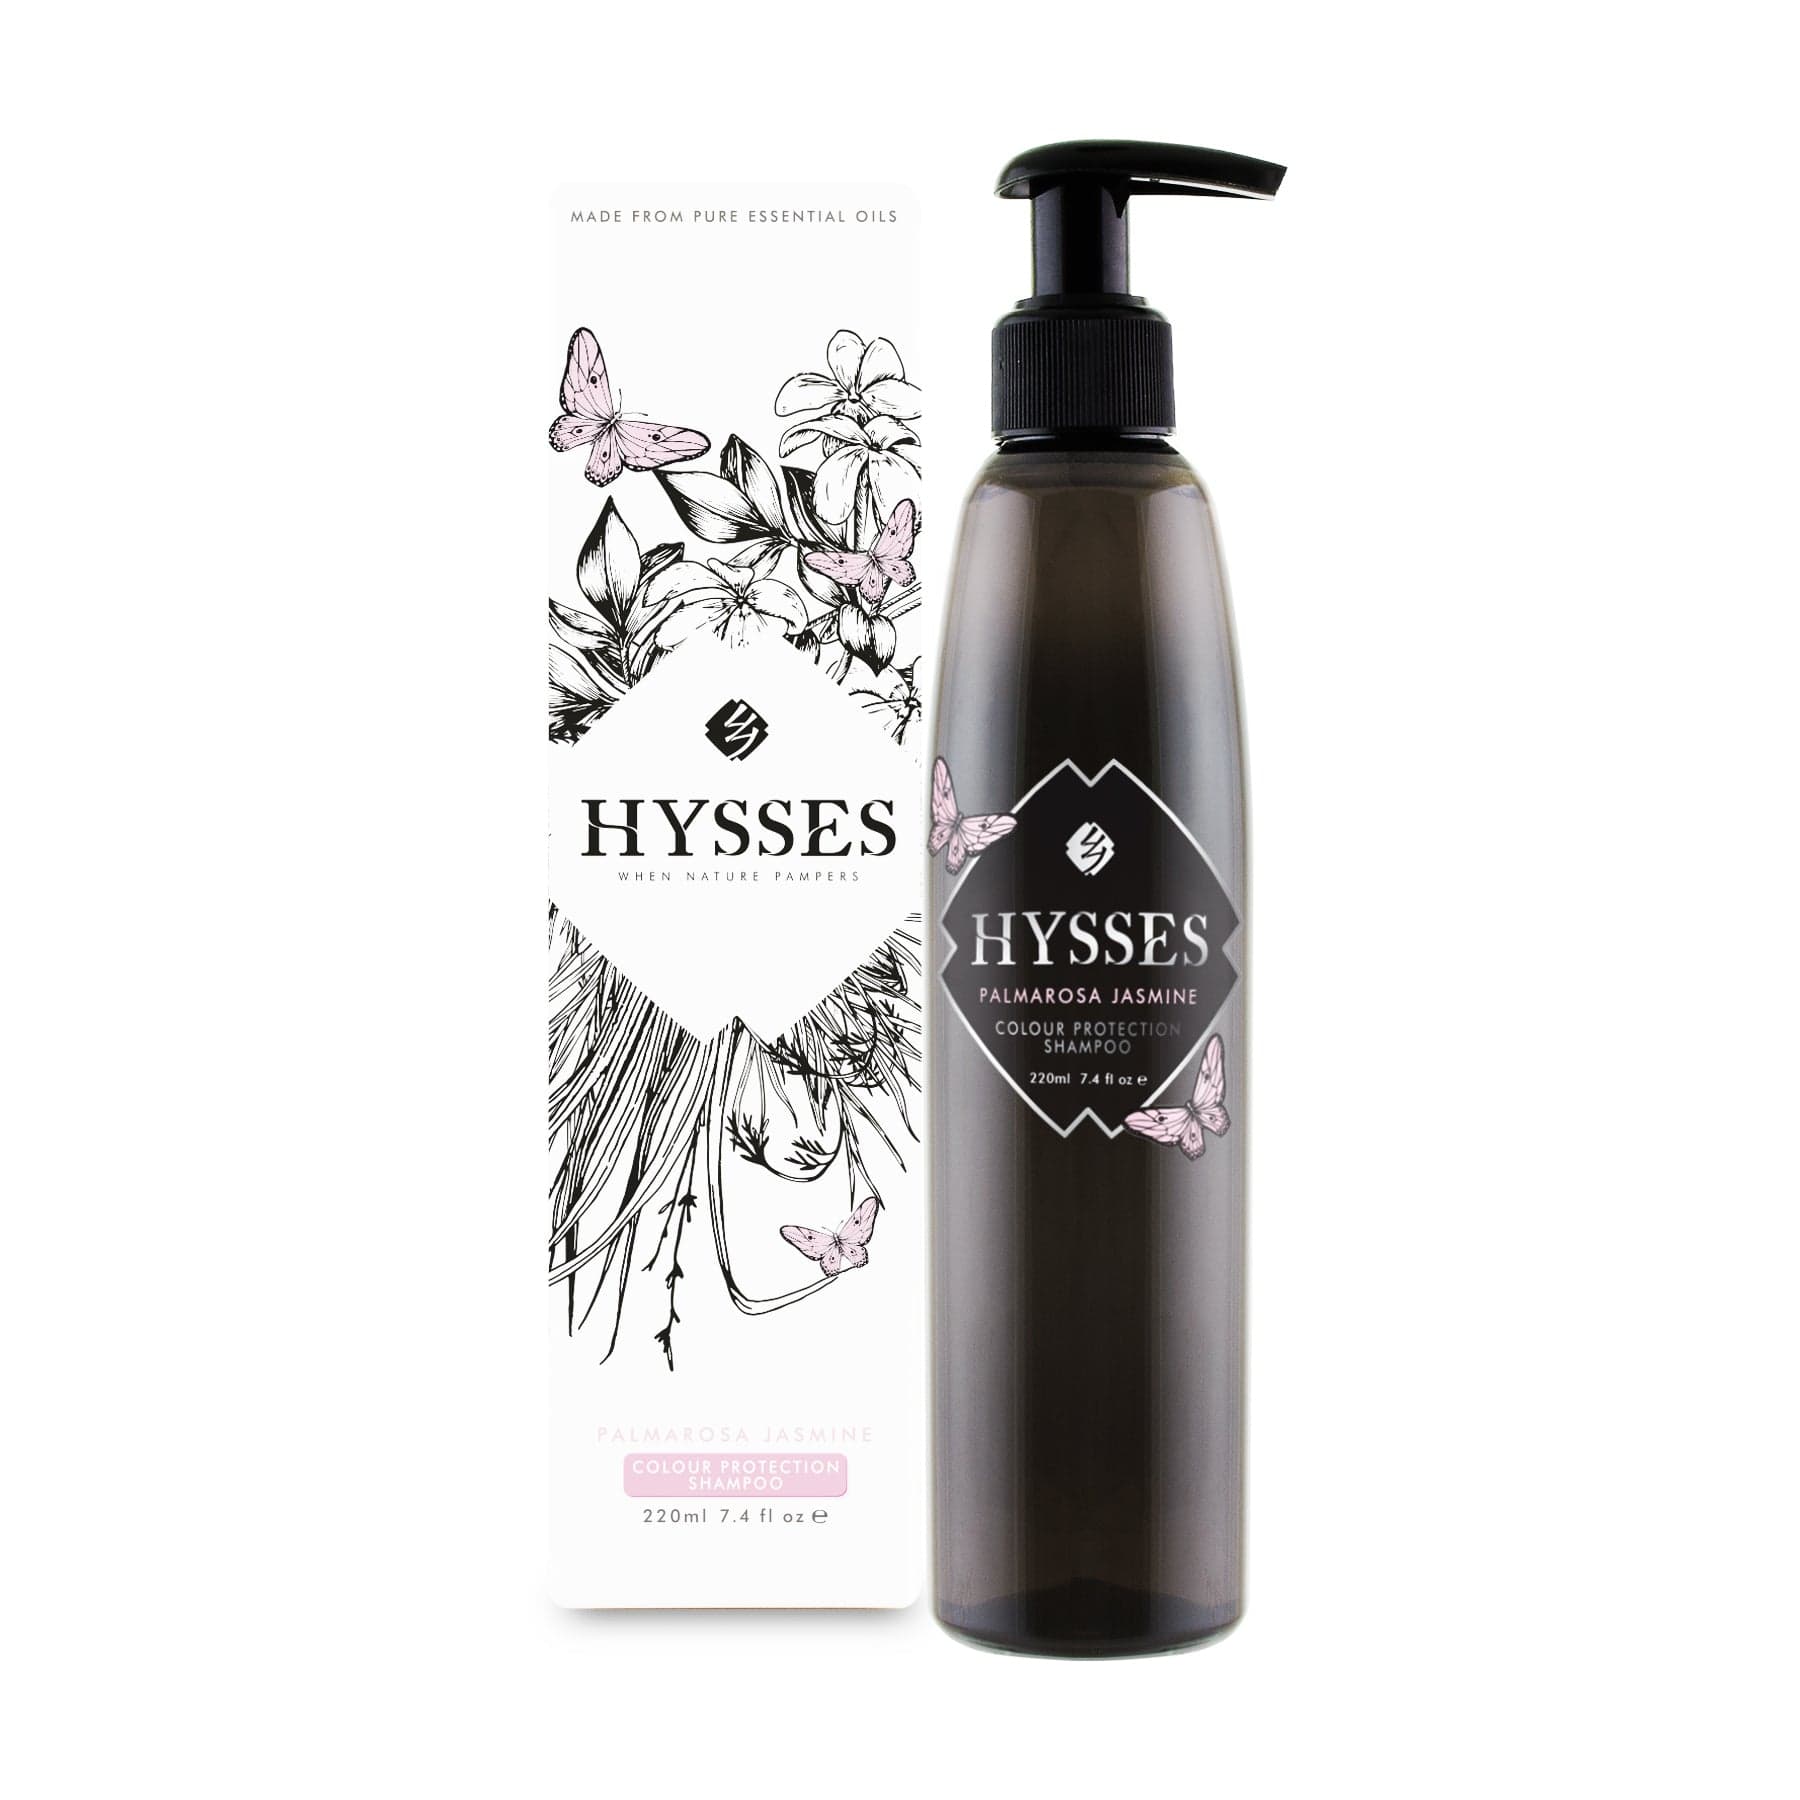 Hysses Hair Care 220ml Colour Protection Shampoo, Palmarosa Jasmine, 220ml